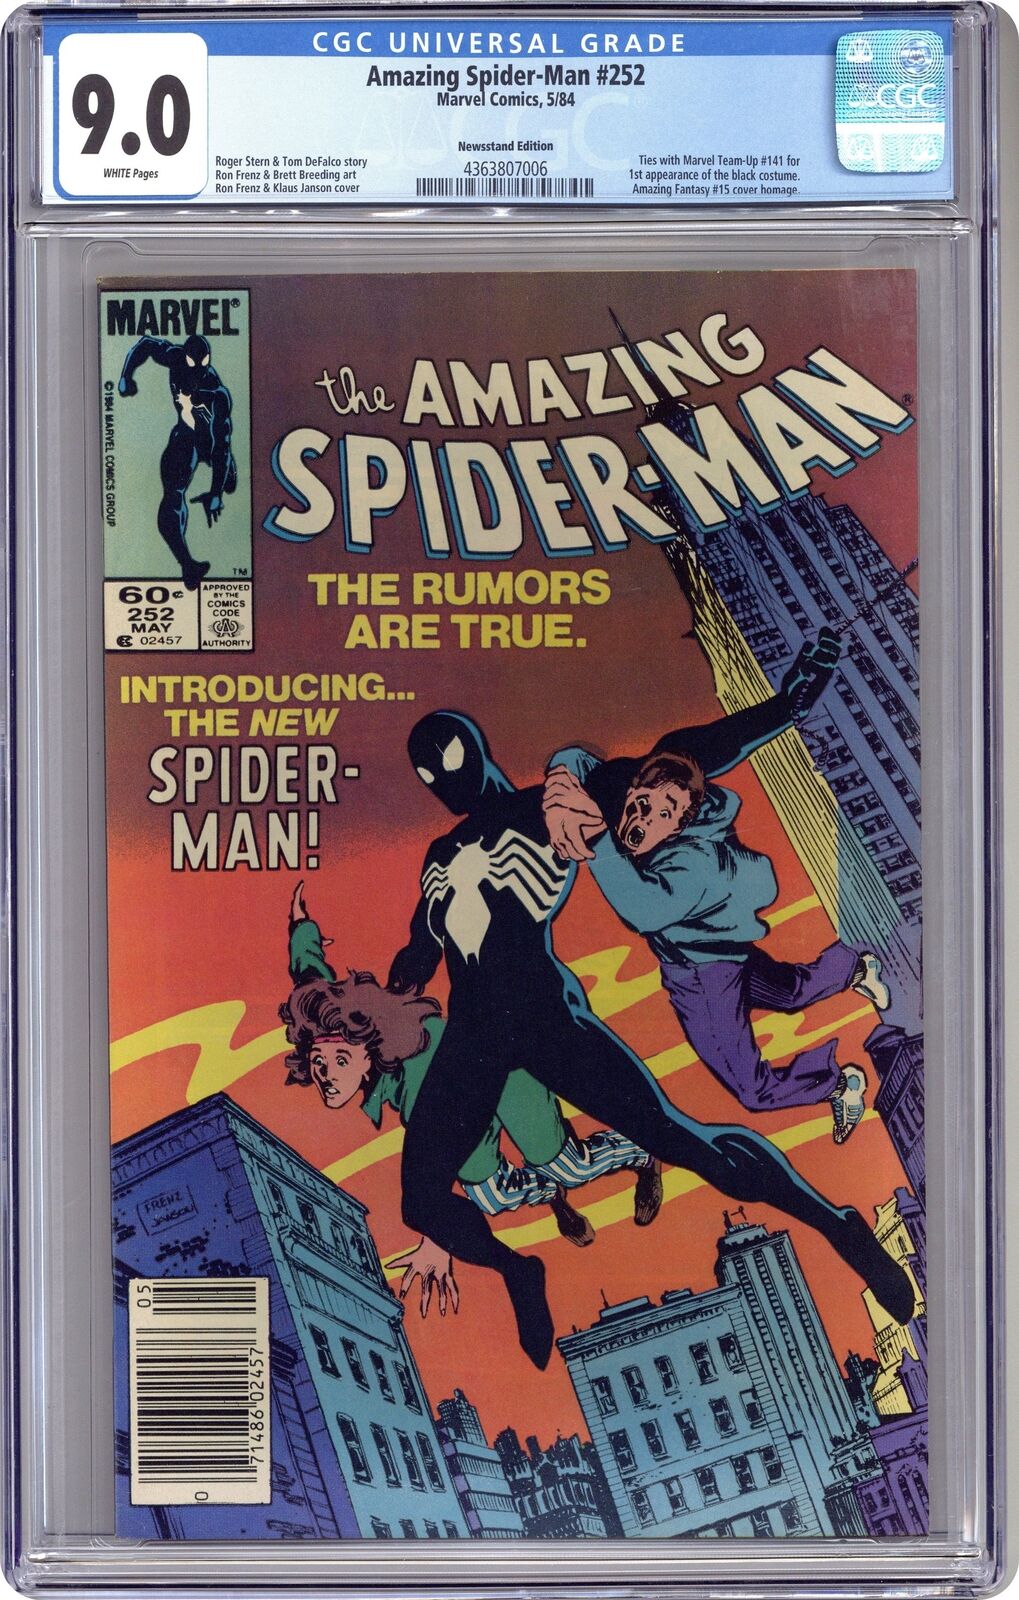 Amazing Spider-Man #252N Newsstand Variant CGC 9.0 1984 4363807006